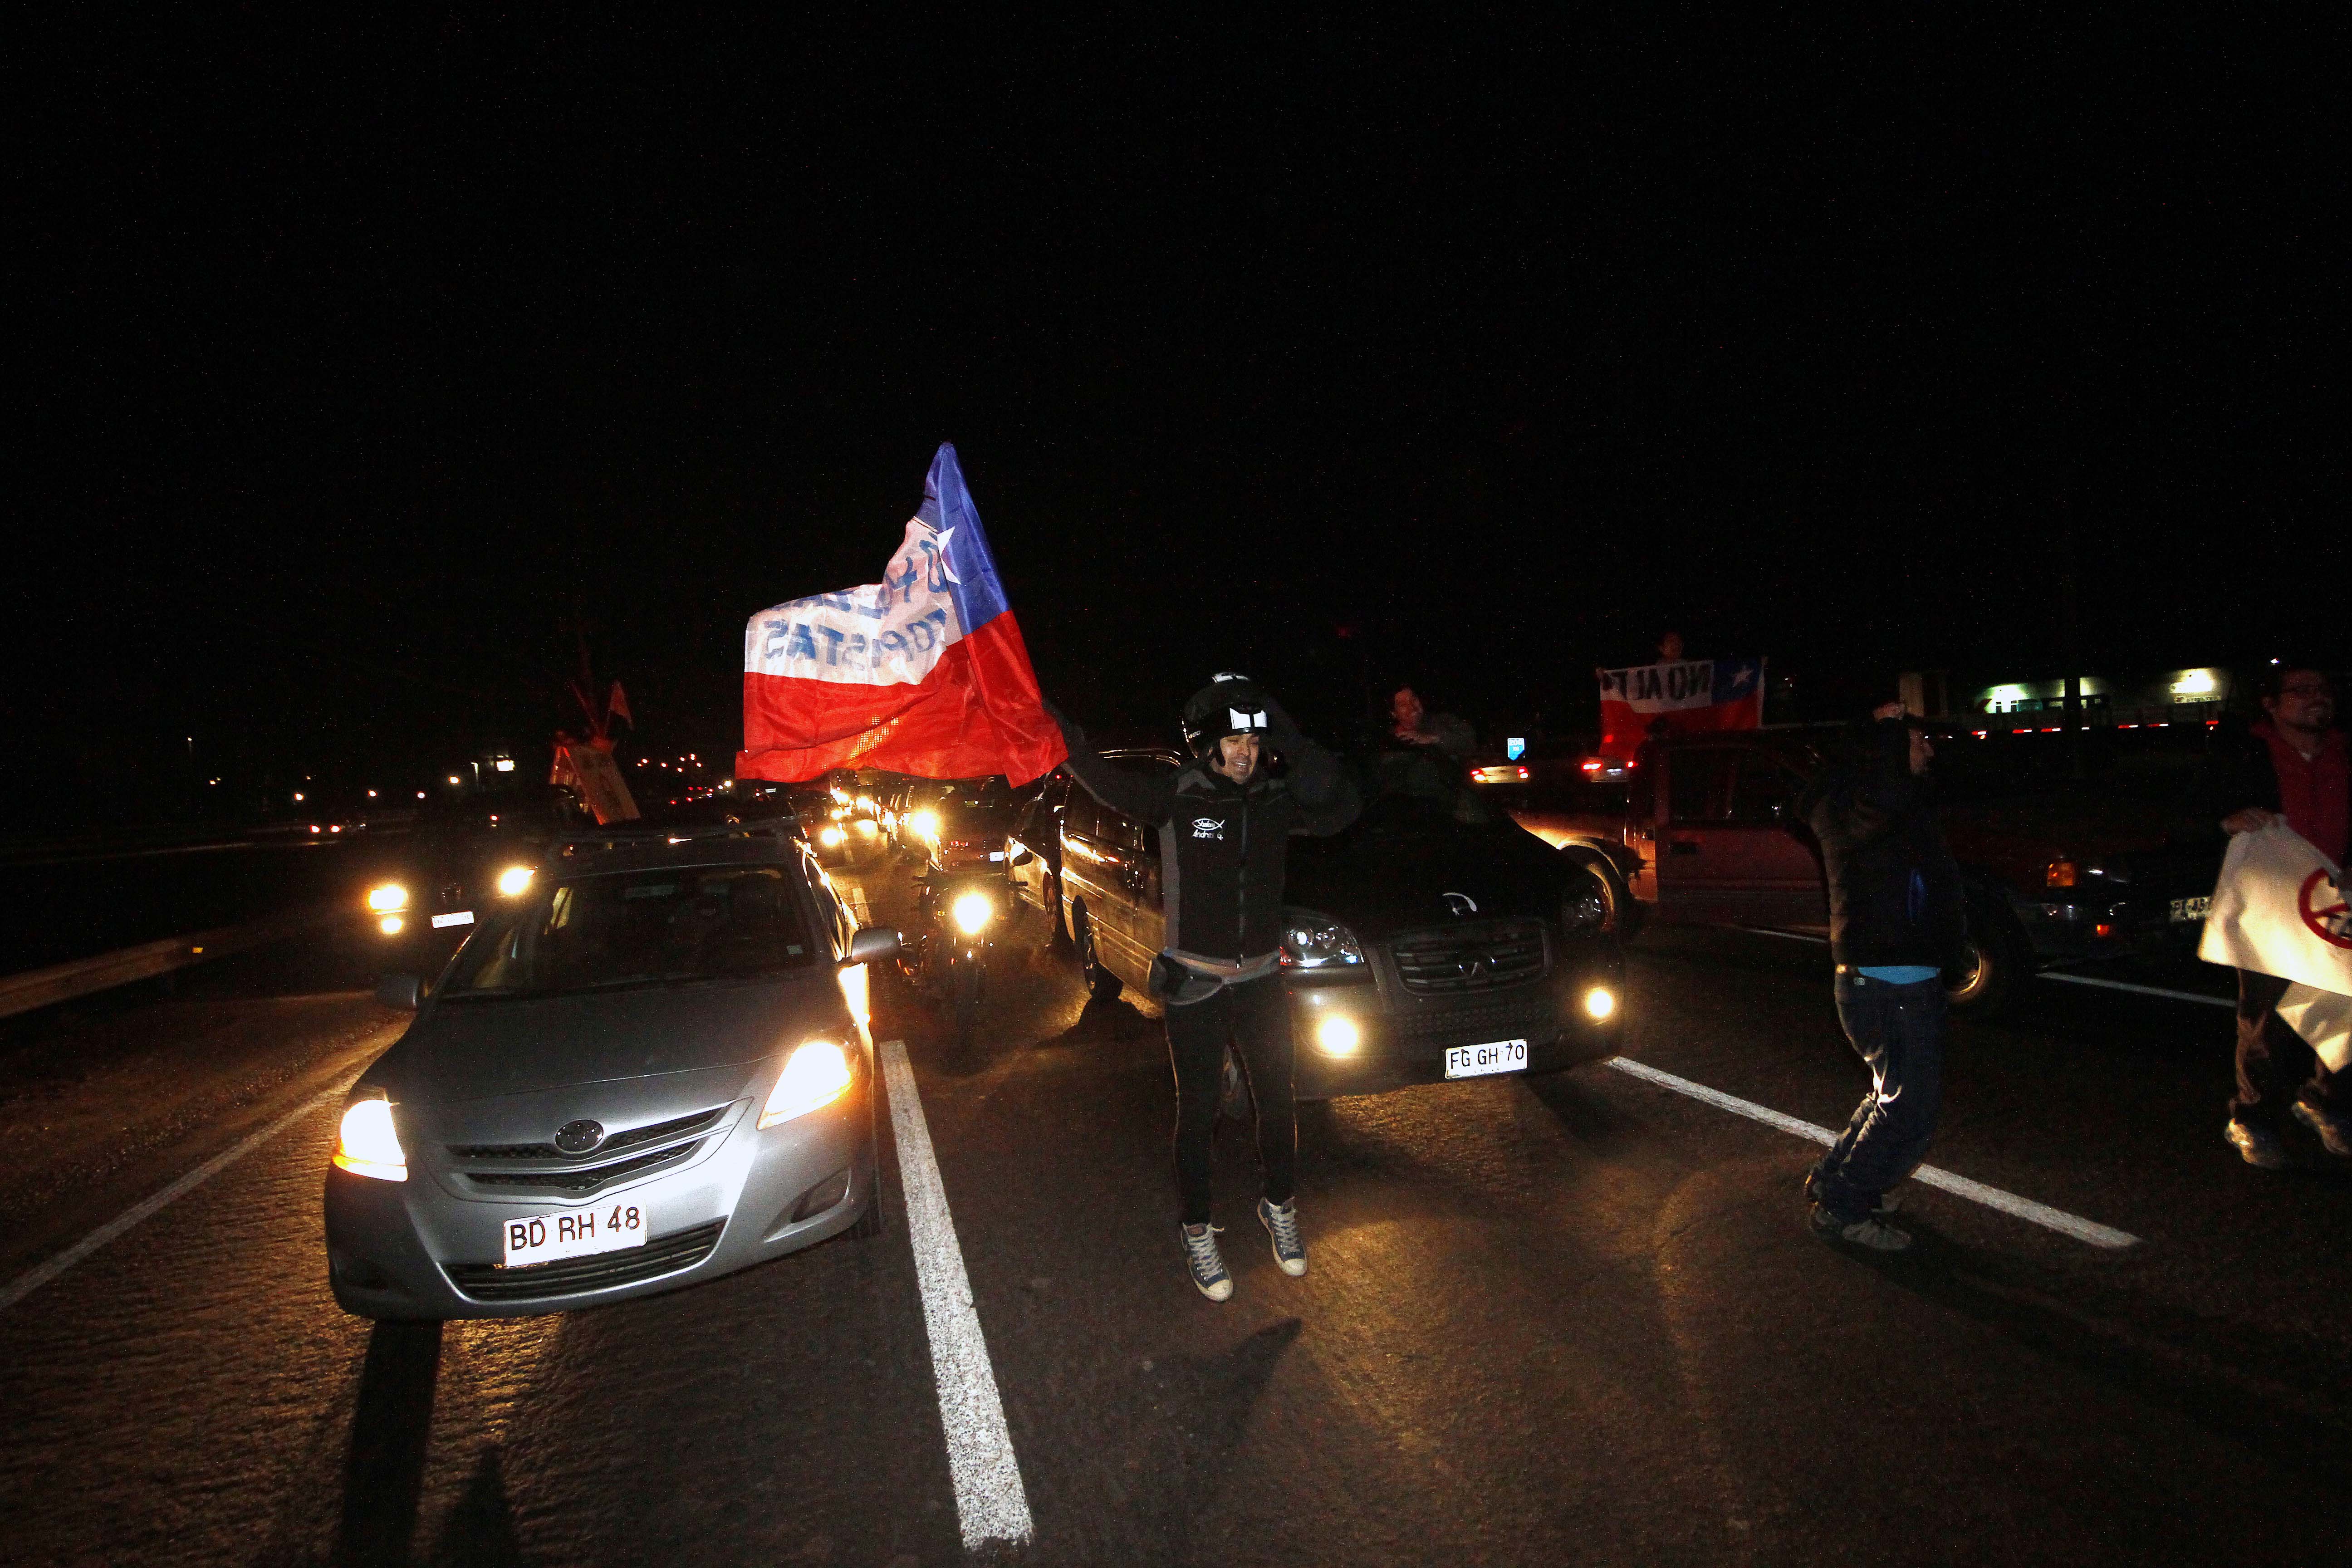 25 de Agosto de 2015/SANTIAGO Vecinos de Lampa bloquearon la ruta 5 Norte a la altura del kilometro 21 en protesta por la instalacion de 4 pórticos Tag que ellos consideran un robo por parte de la autopista concesionaria FOTO: FRANCISCO CASTILLO D./AGENCIAUNO